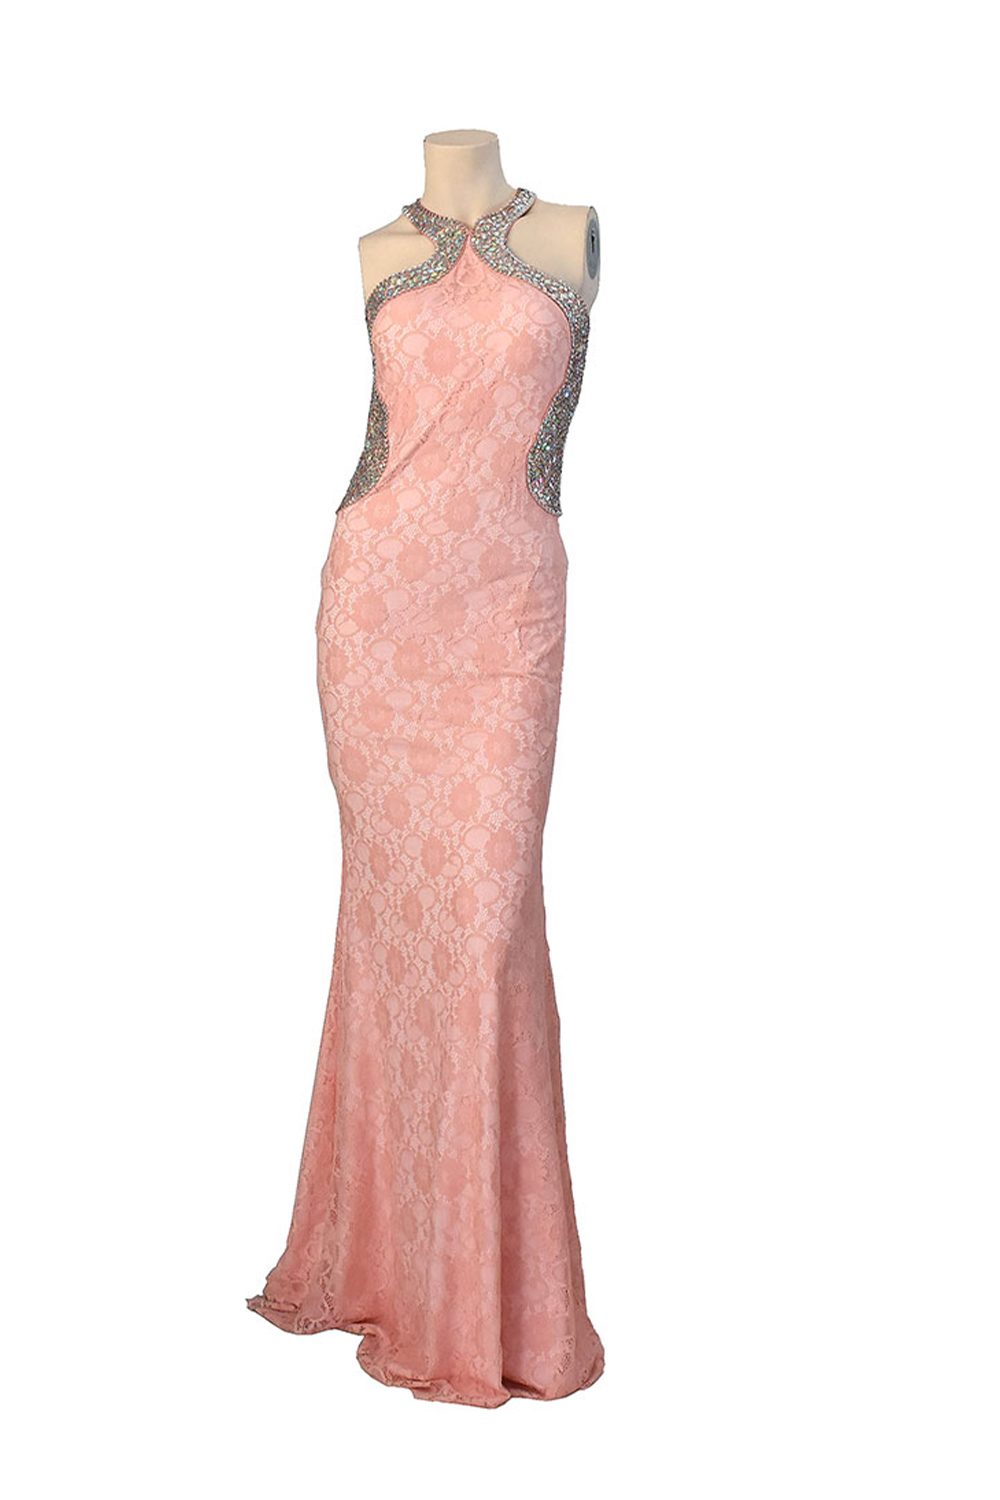 Ροζ γοργονέ βραδινό φόρεμα